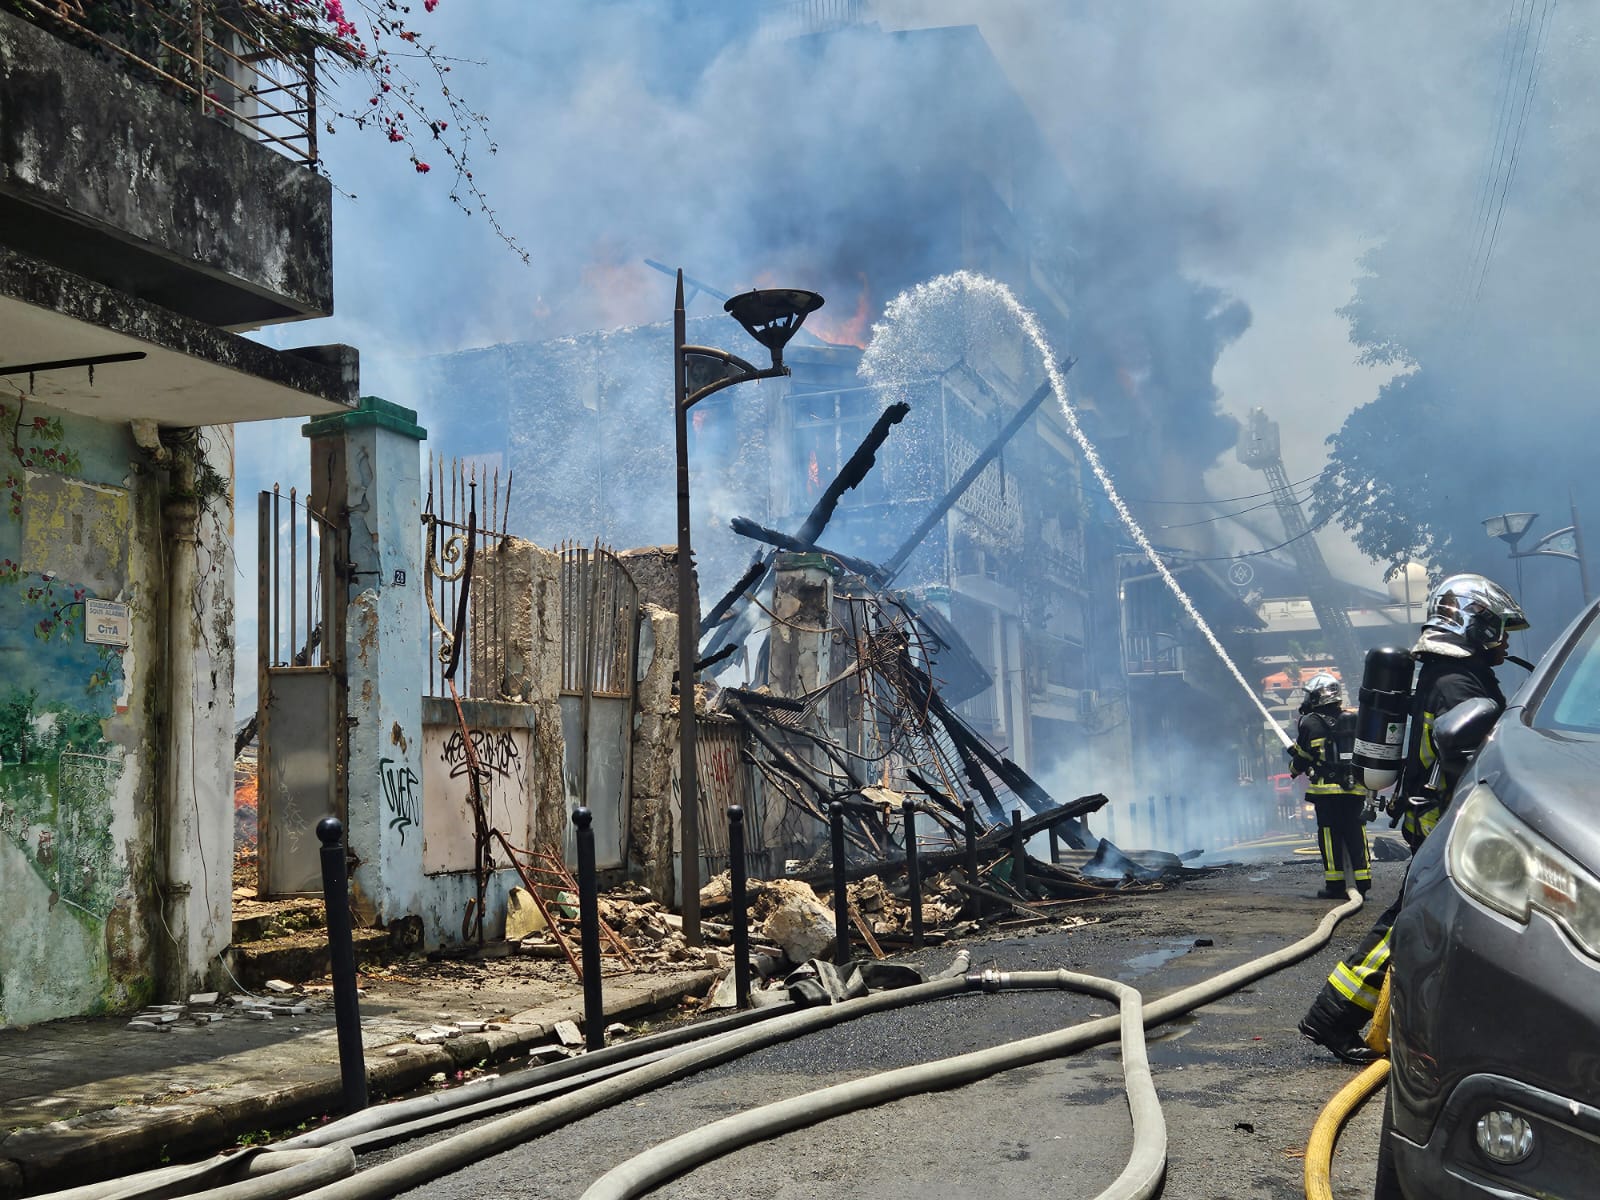     Incendie rue Peynier : les pompiers sont à l’œuvre

